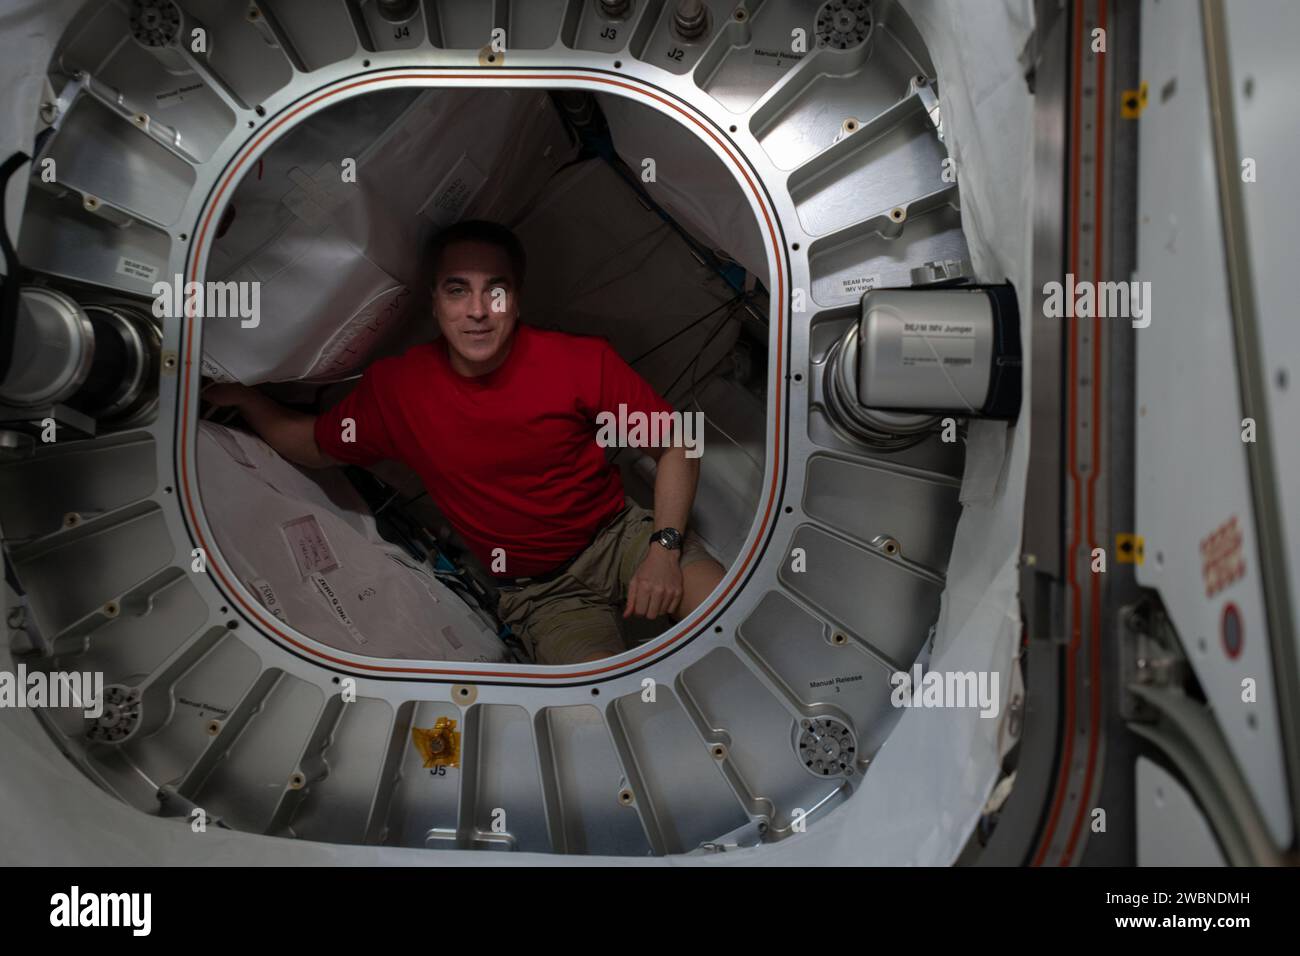 Iss063e028479 (1 juillet 2020) --- Chris Cassidy, astronaute de la NASA et commandant de l'expédition 63, est photographié à l'intérieur du module aérospatial extensible Bigelow (BEAM) pendant les opérations de récupération des filtres à charbon. Banque D'Images